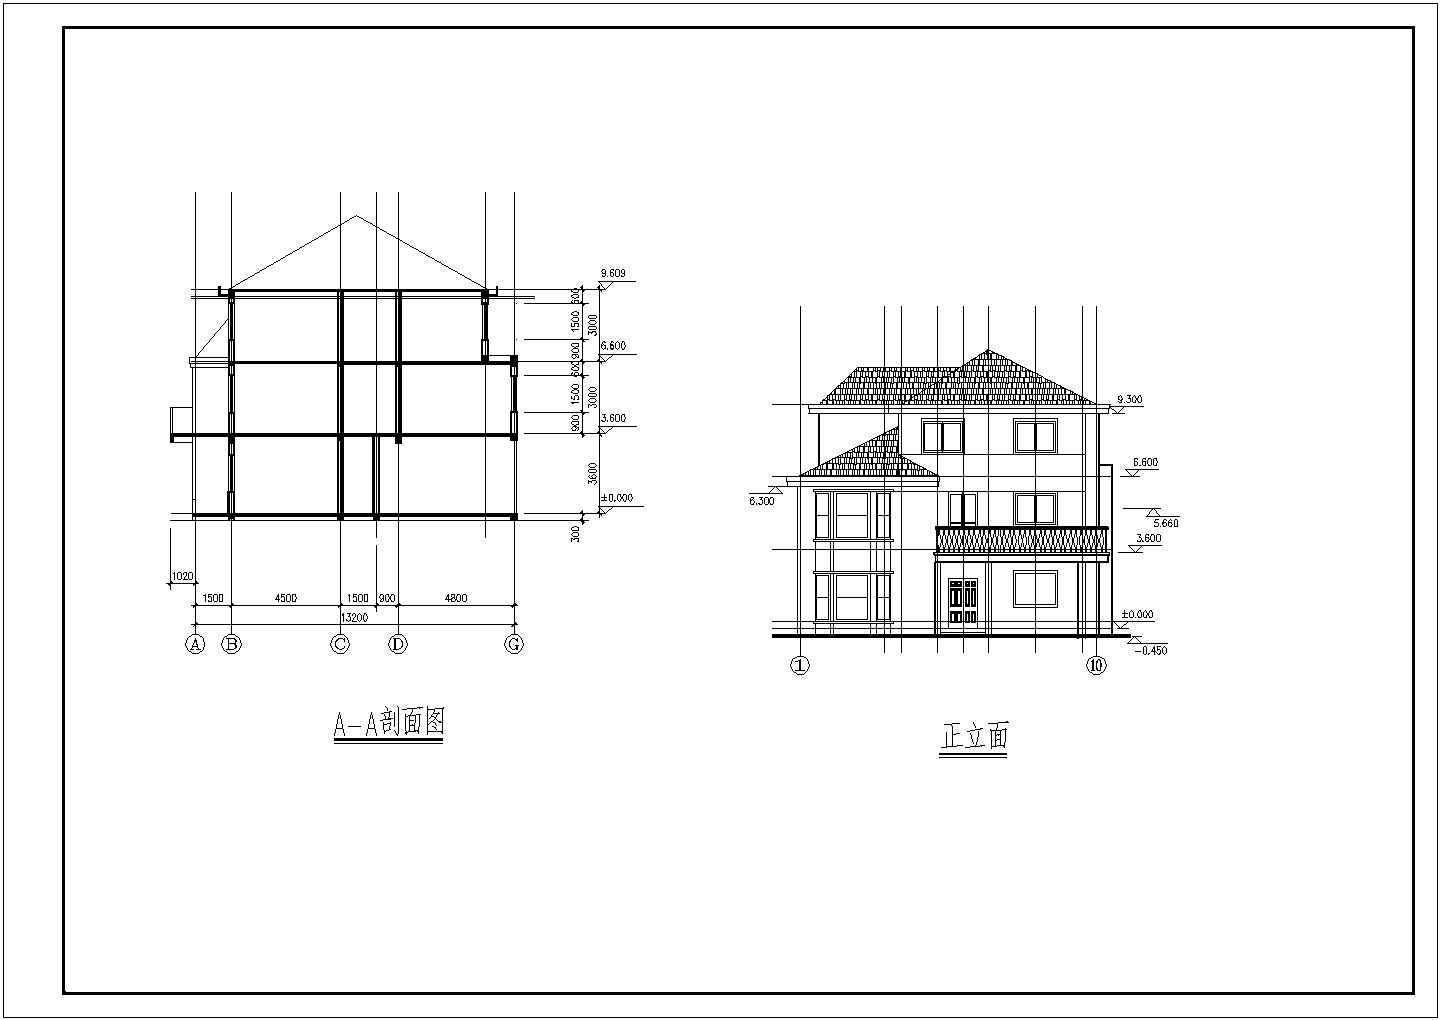 长13.2米 宽12.26米 3层别墅建施结施【建筑图 结构图】